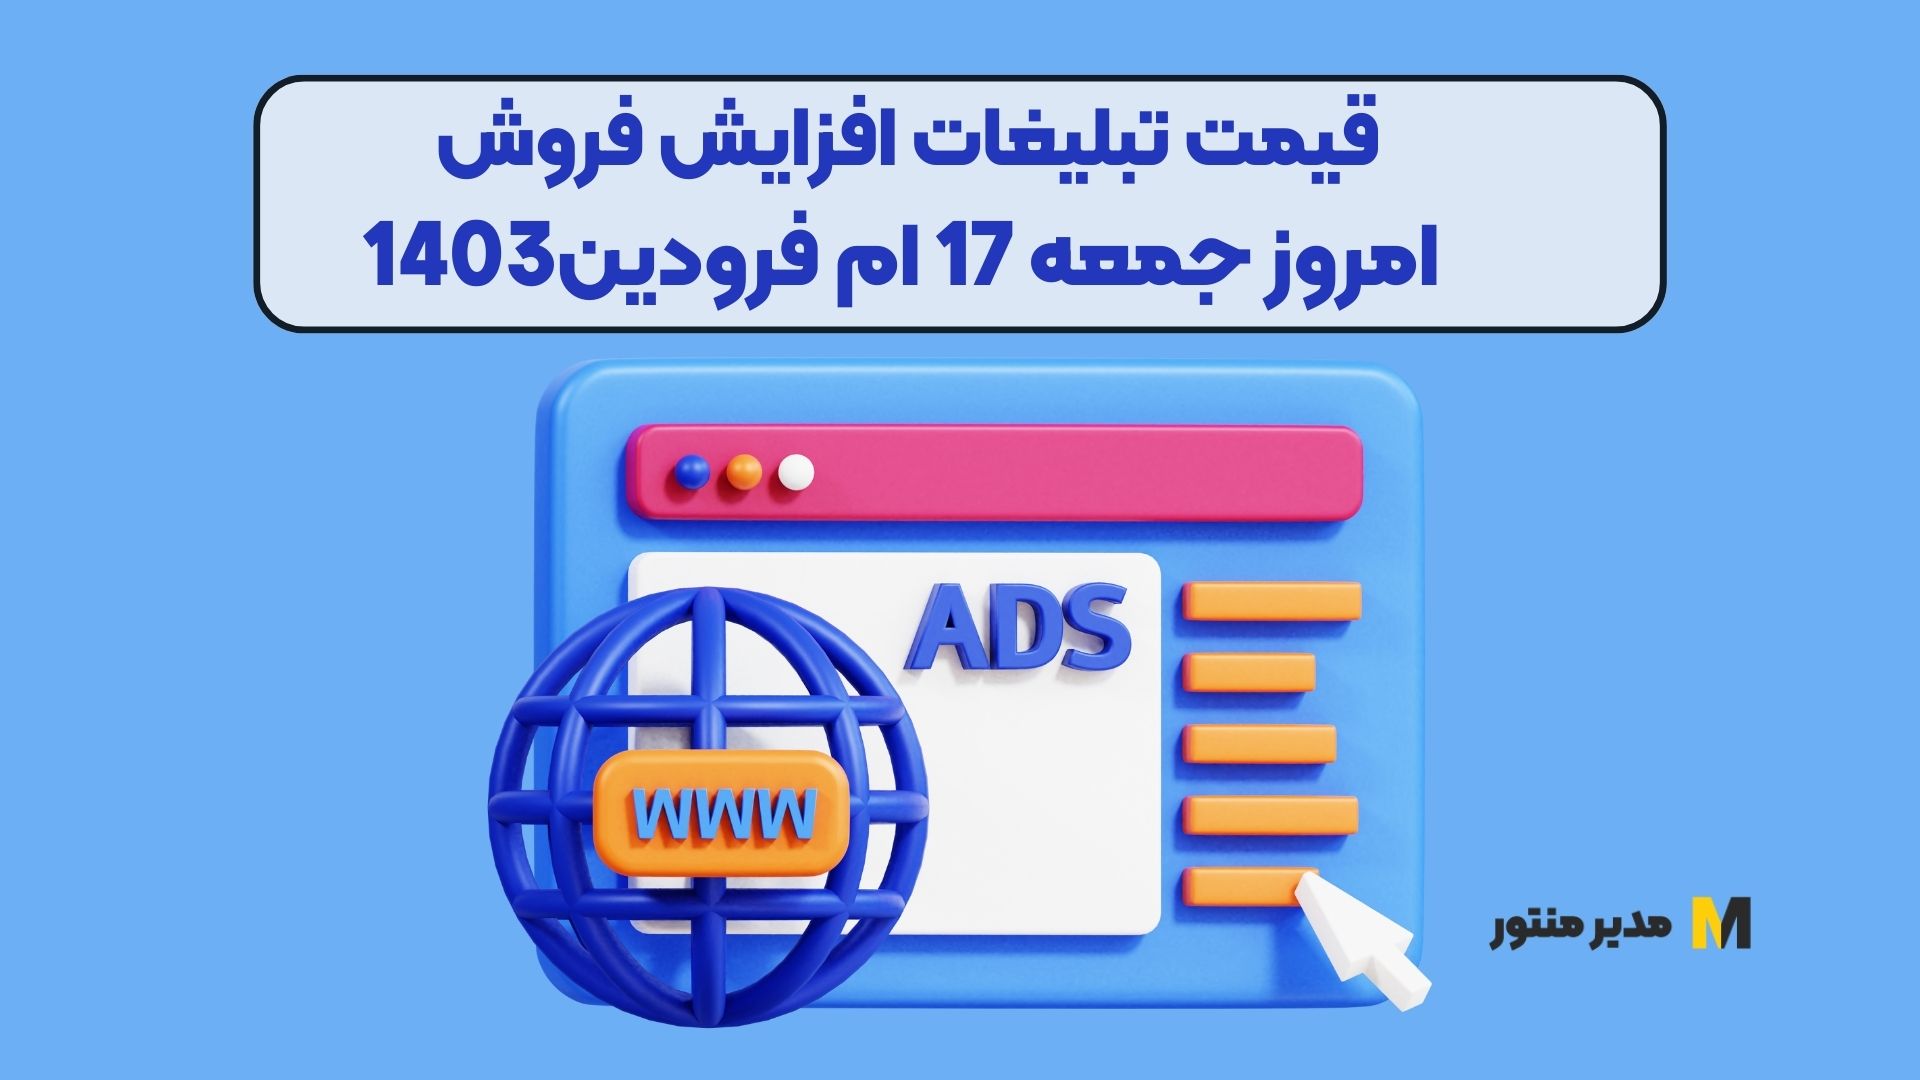 قیمت تبلیغات افزایش فروش امروز جمعه 17 ام فرودین1403